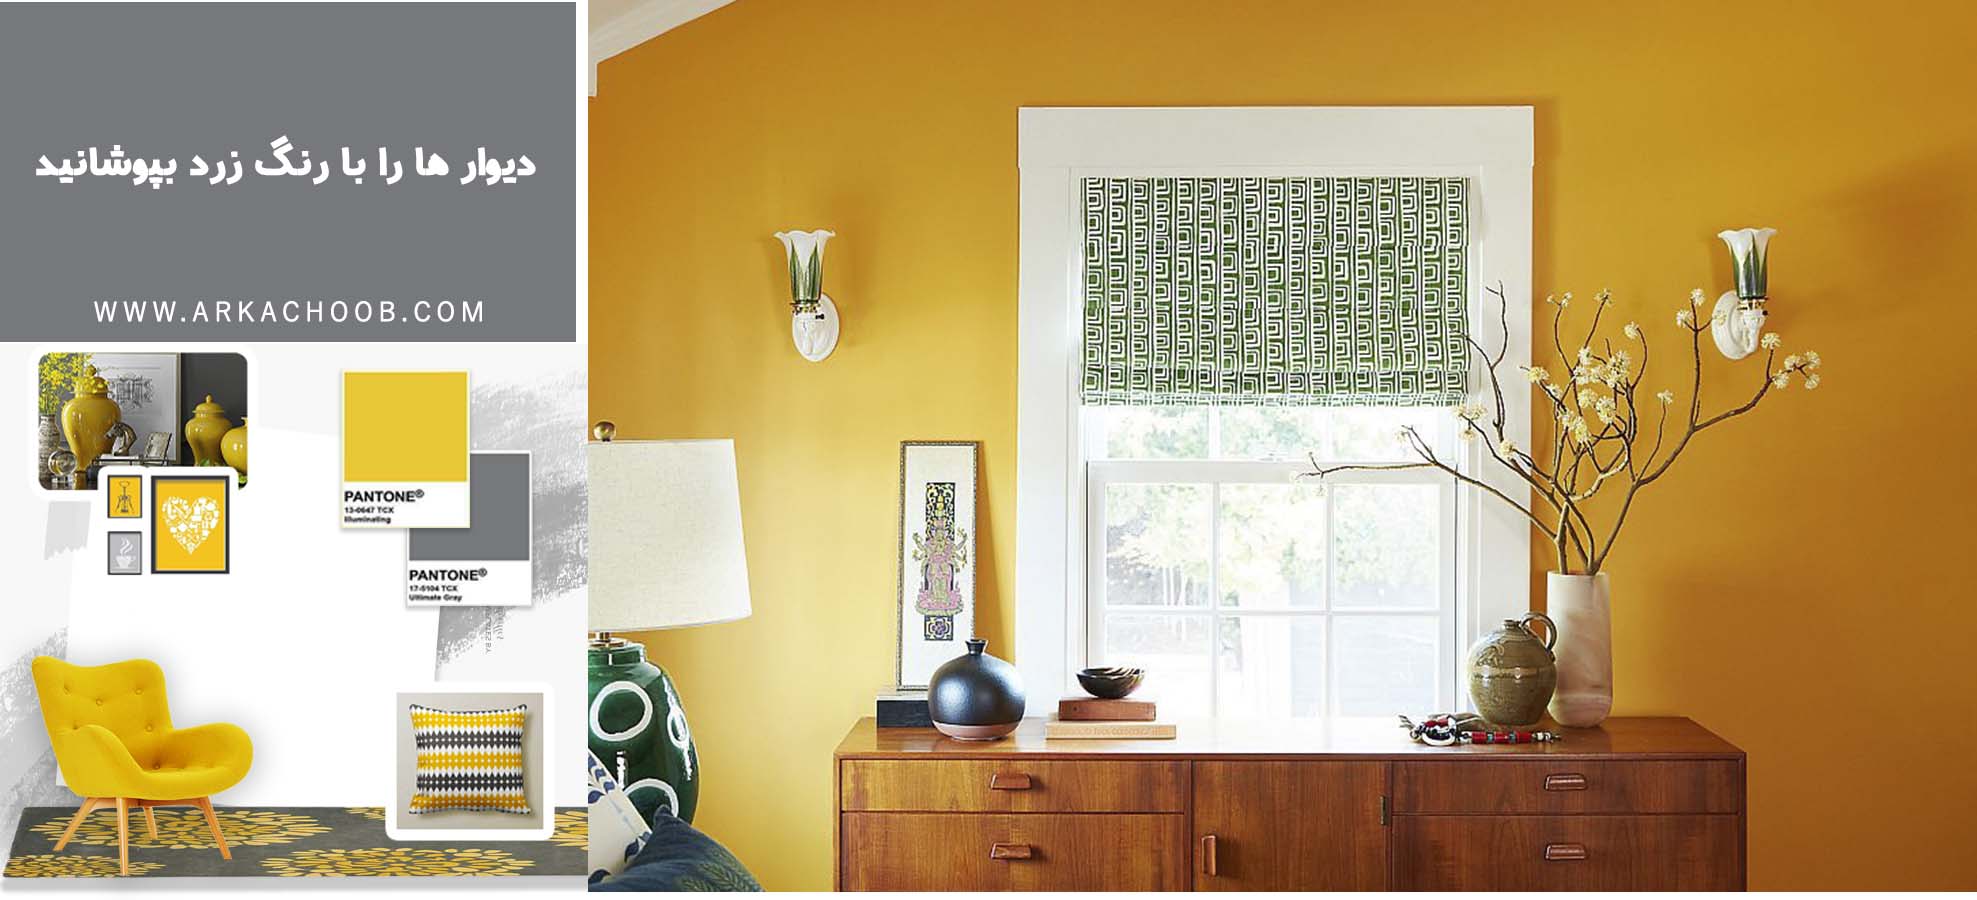 دیوارها را با رنگ زرد بپوشانید - استفاده از رنگ زرد در اتاق خواب